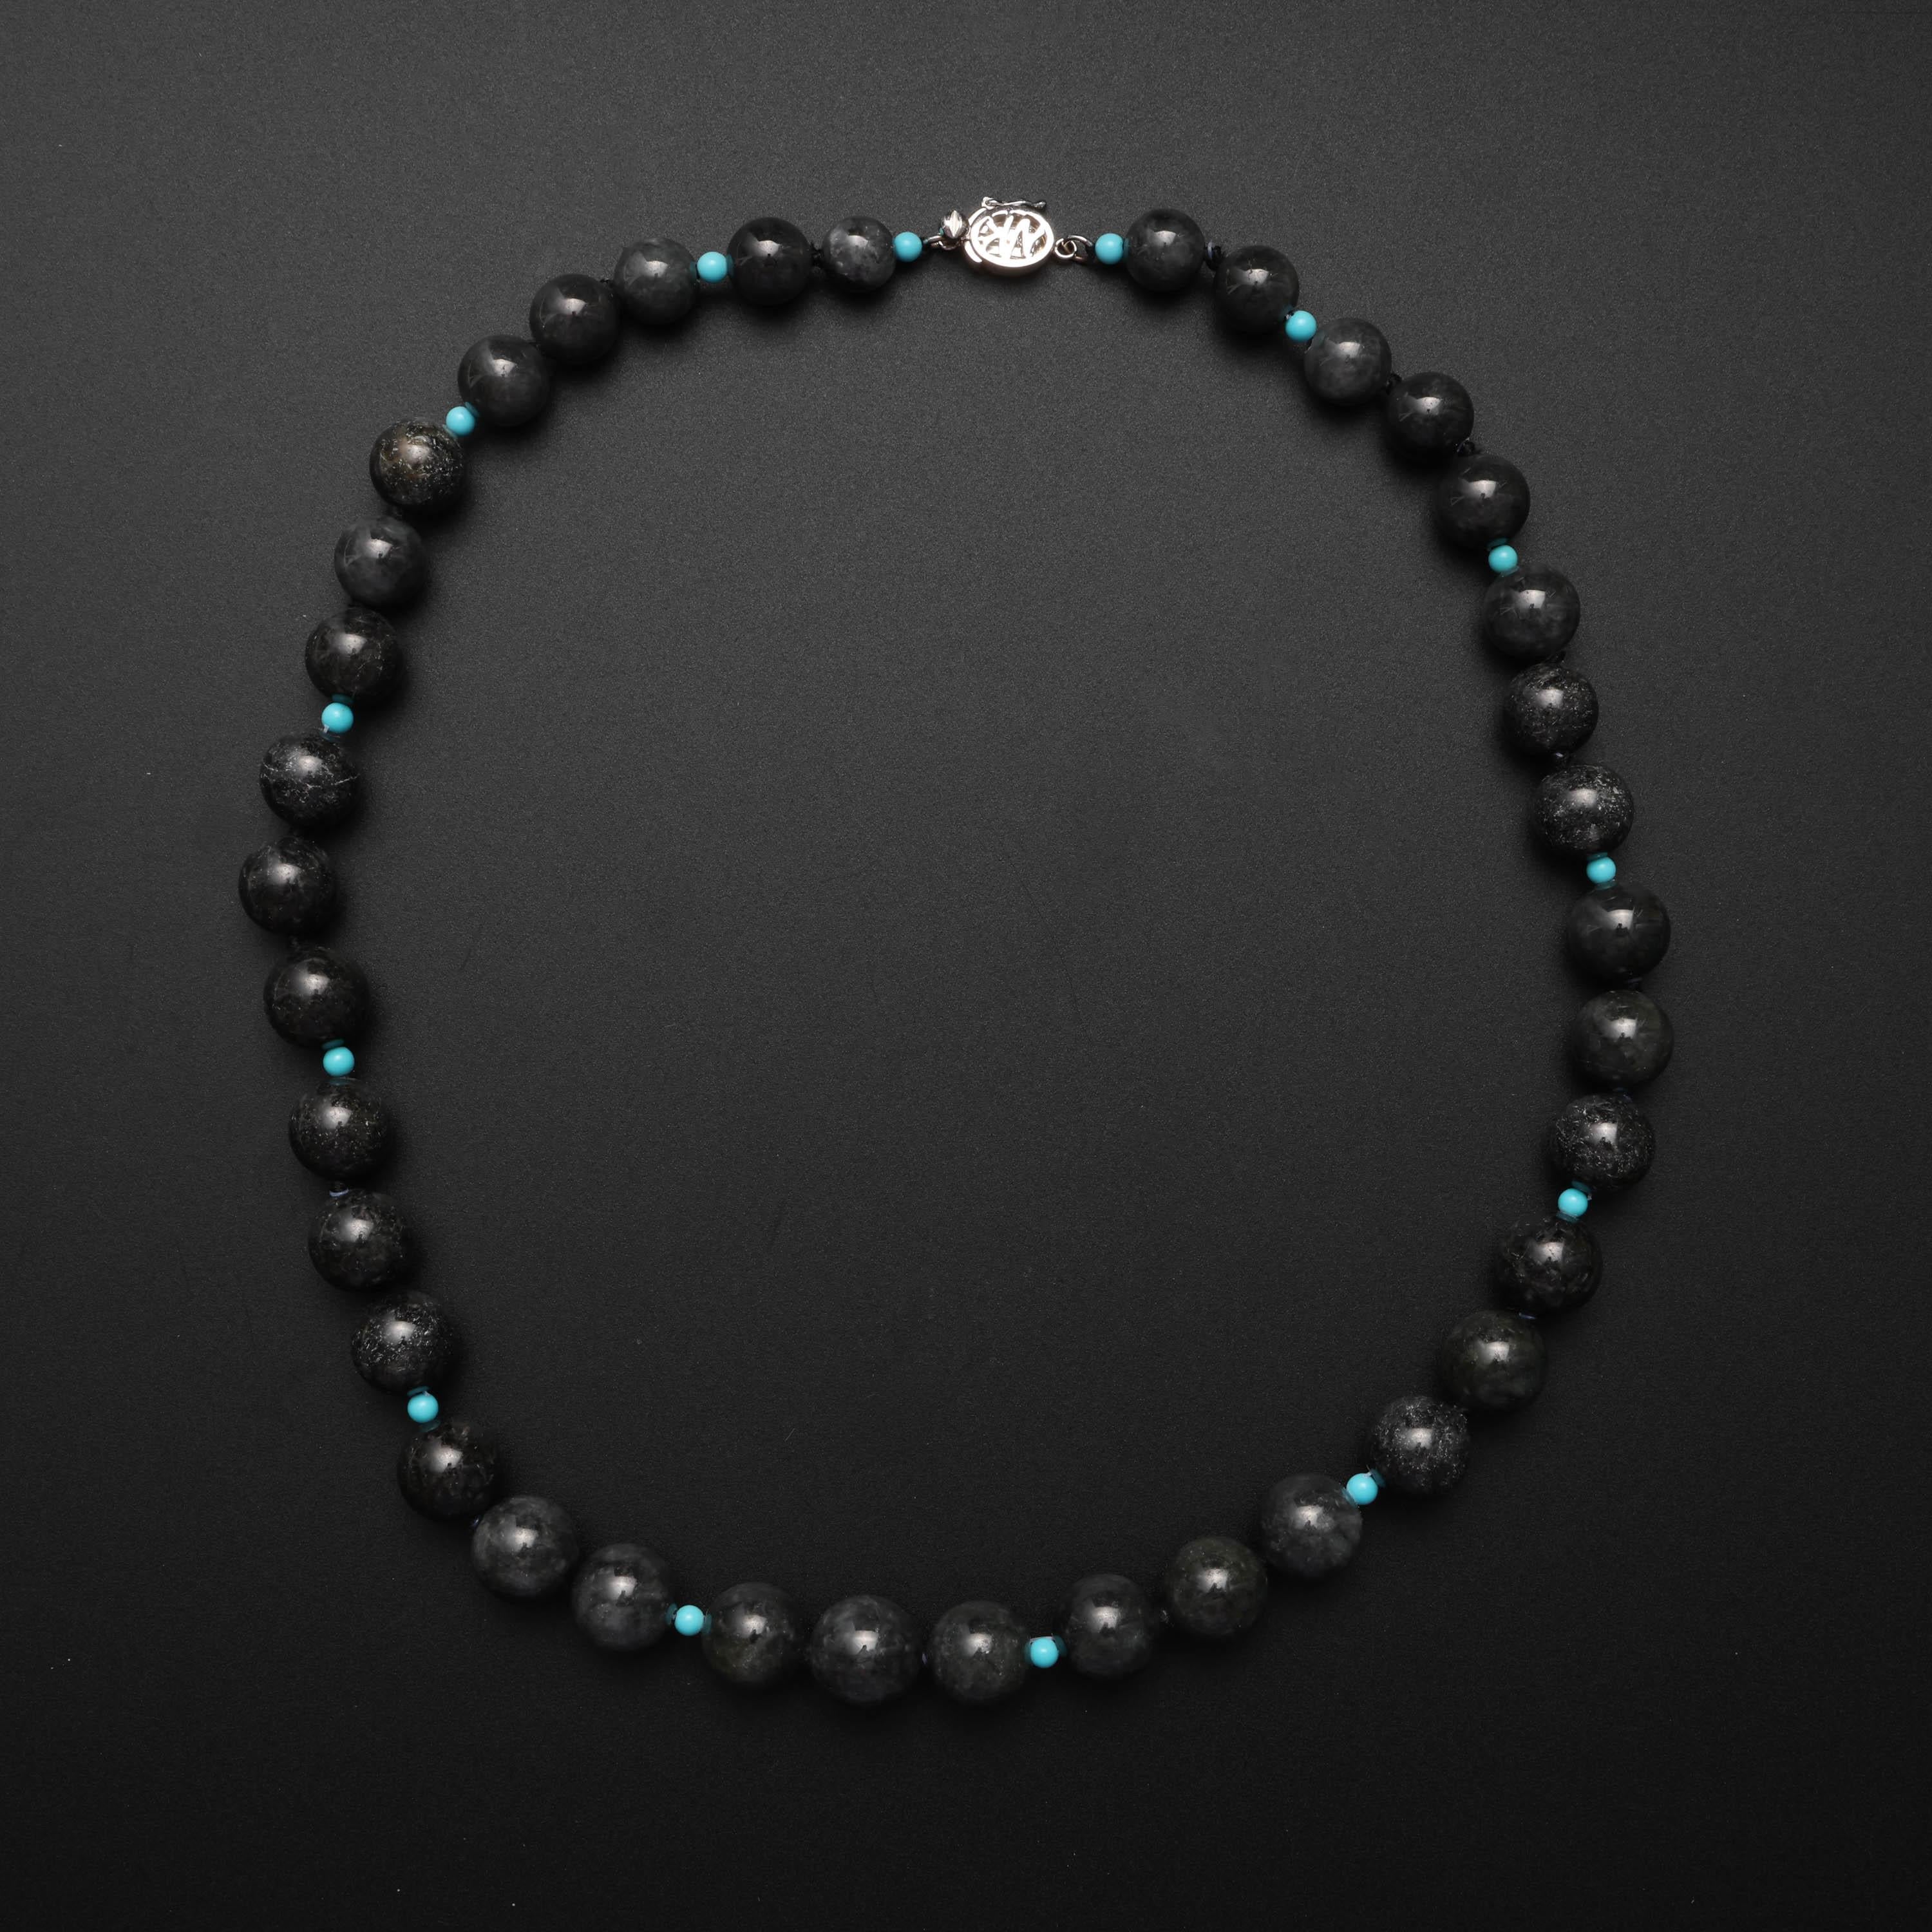 Diese luxuriöse und seltene Halskette aus schwarzem Jadeit besteht aus 37 zertifizierten, unbehandelten schwarzen Jadeperlen, die in der Größe von 8 mm bis 11 mm abgestuft sind. Der Strang wird durch 14 3 mm große türkisfarbene Perlen in Robin's Egg